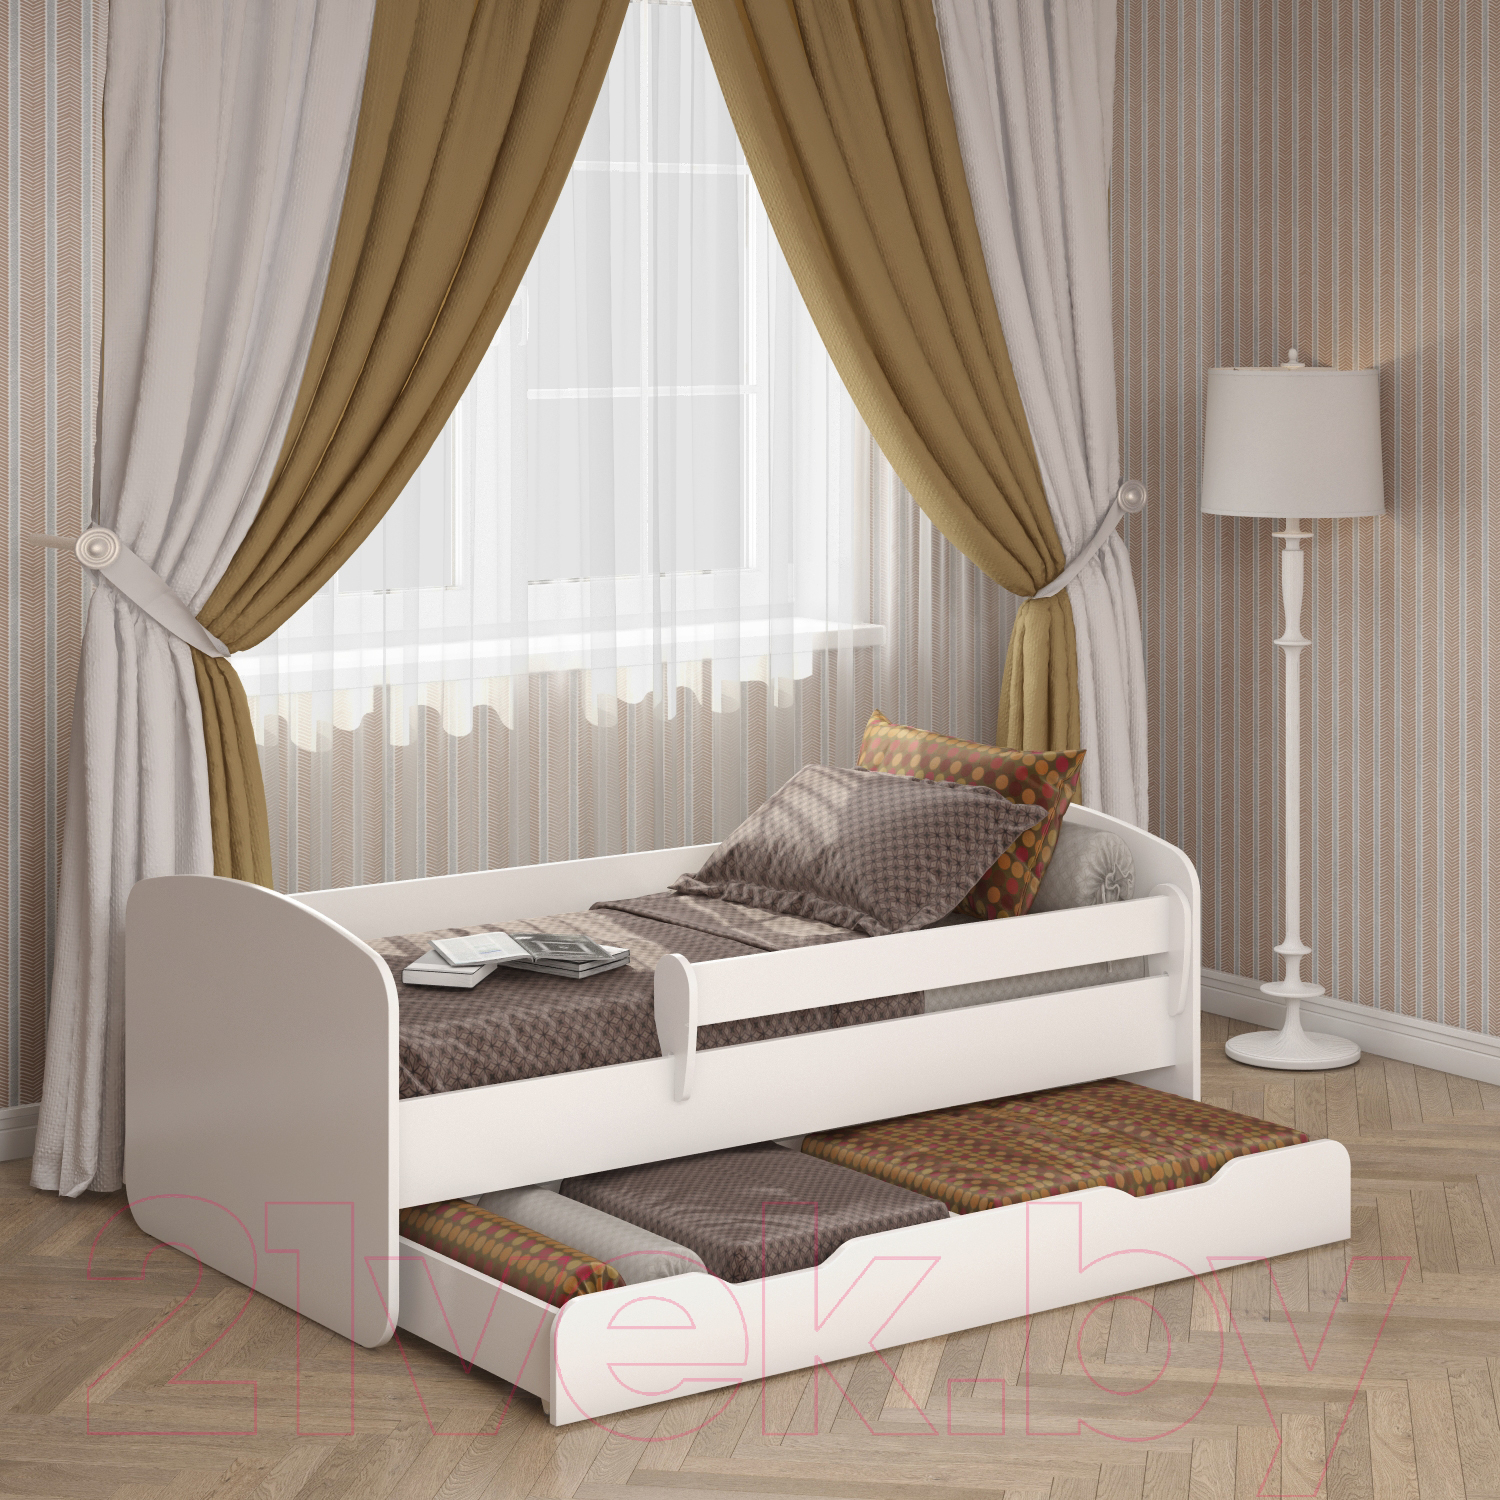 Односпальная кровать детская Славянская столица Д-34203-70 1646х900х650